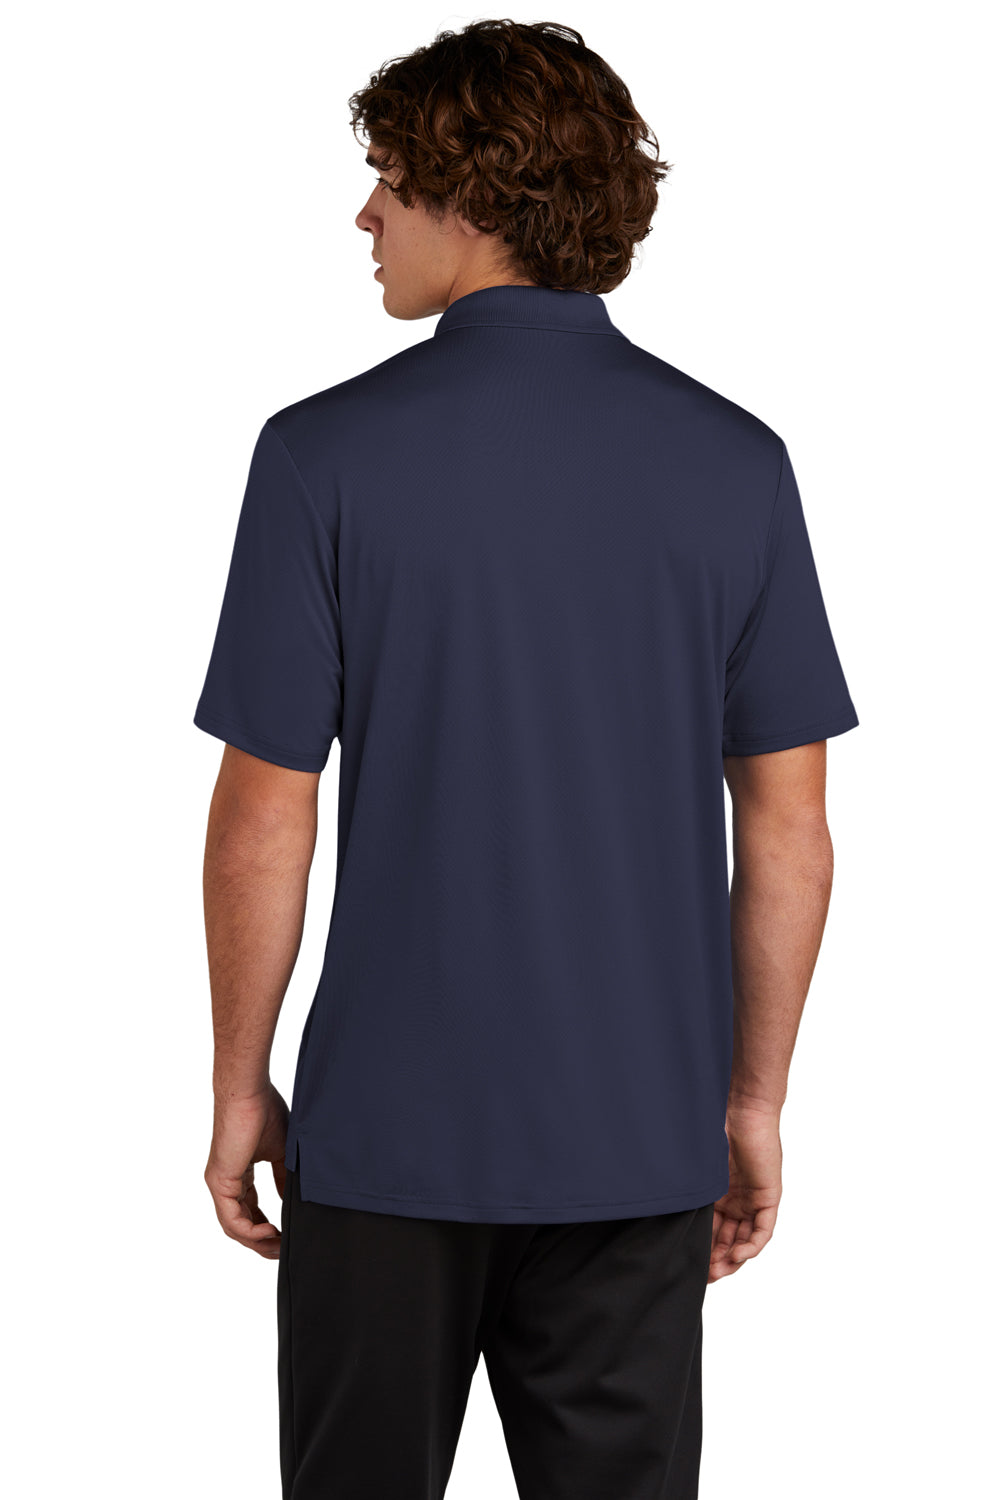 Sport-Tek Mens Sideline Short Sleeve Polo Shirt True Navy Blue Back